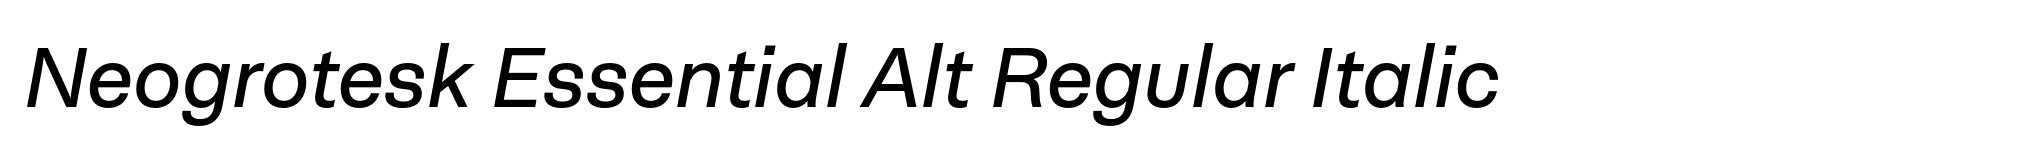 Neogrotesk Essential Alt Regular Italic image